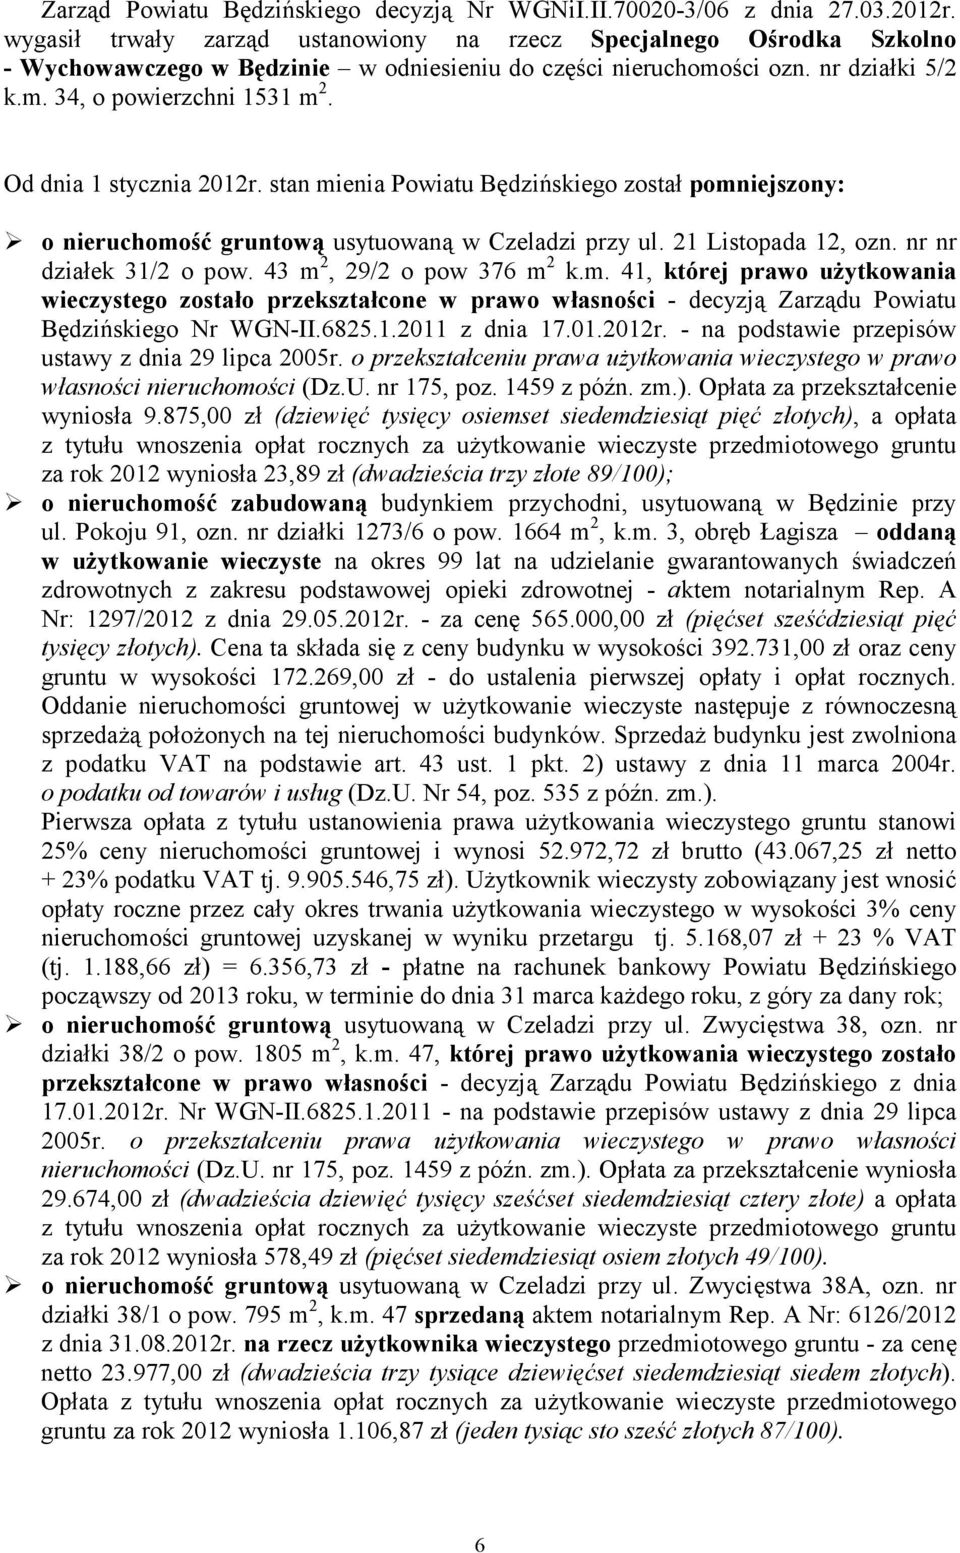 Od dnia 1 stycznia 2012r. stan mienia Powiatu Będzińskiego został pomniejszony: o nieruchomość gruntową usytuowaną w Czeladzi przy ul. 21 Listopada 12, ozn. nr nr działek 31/2 o pow.